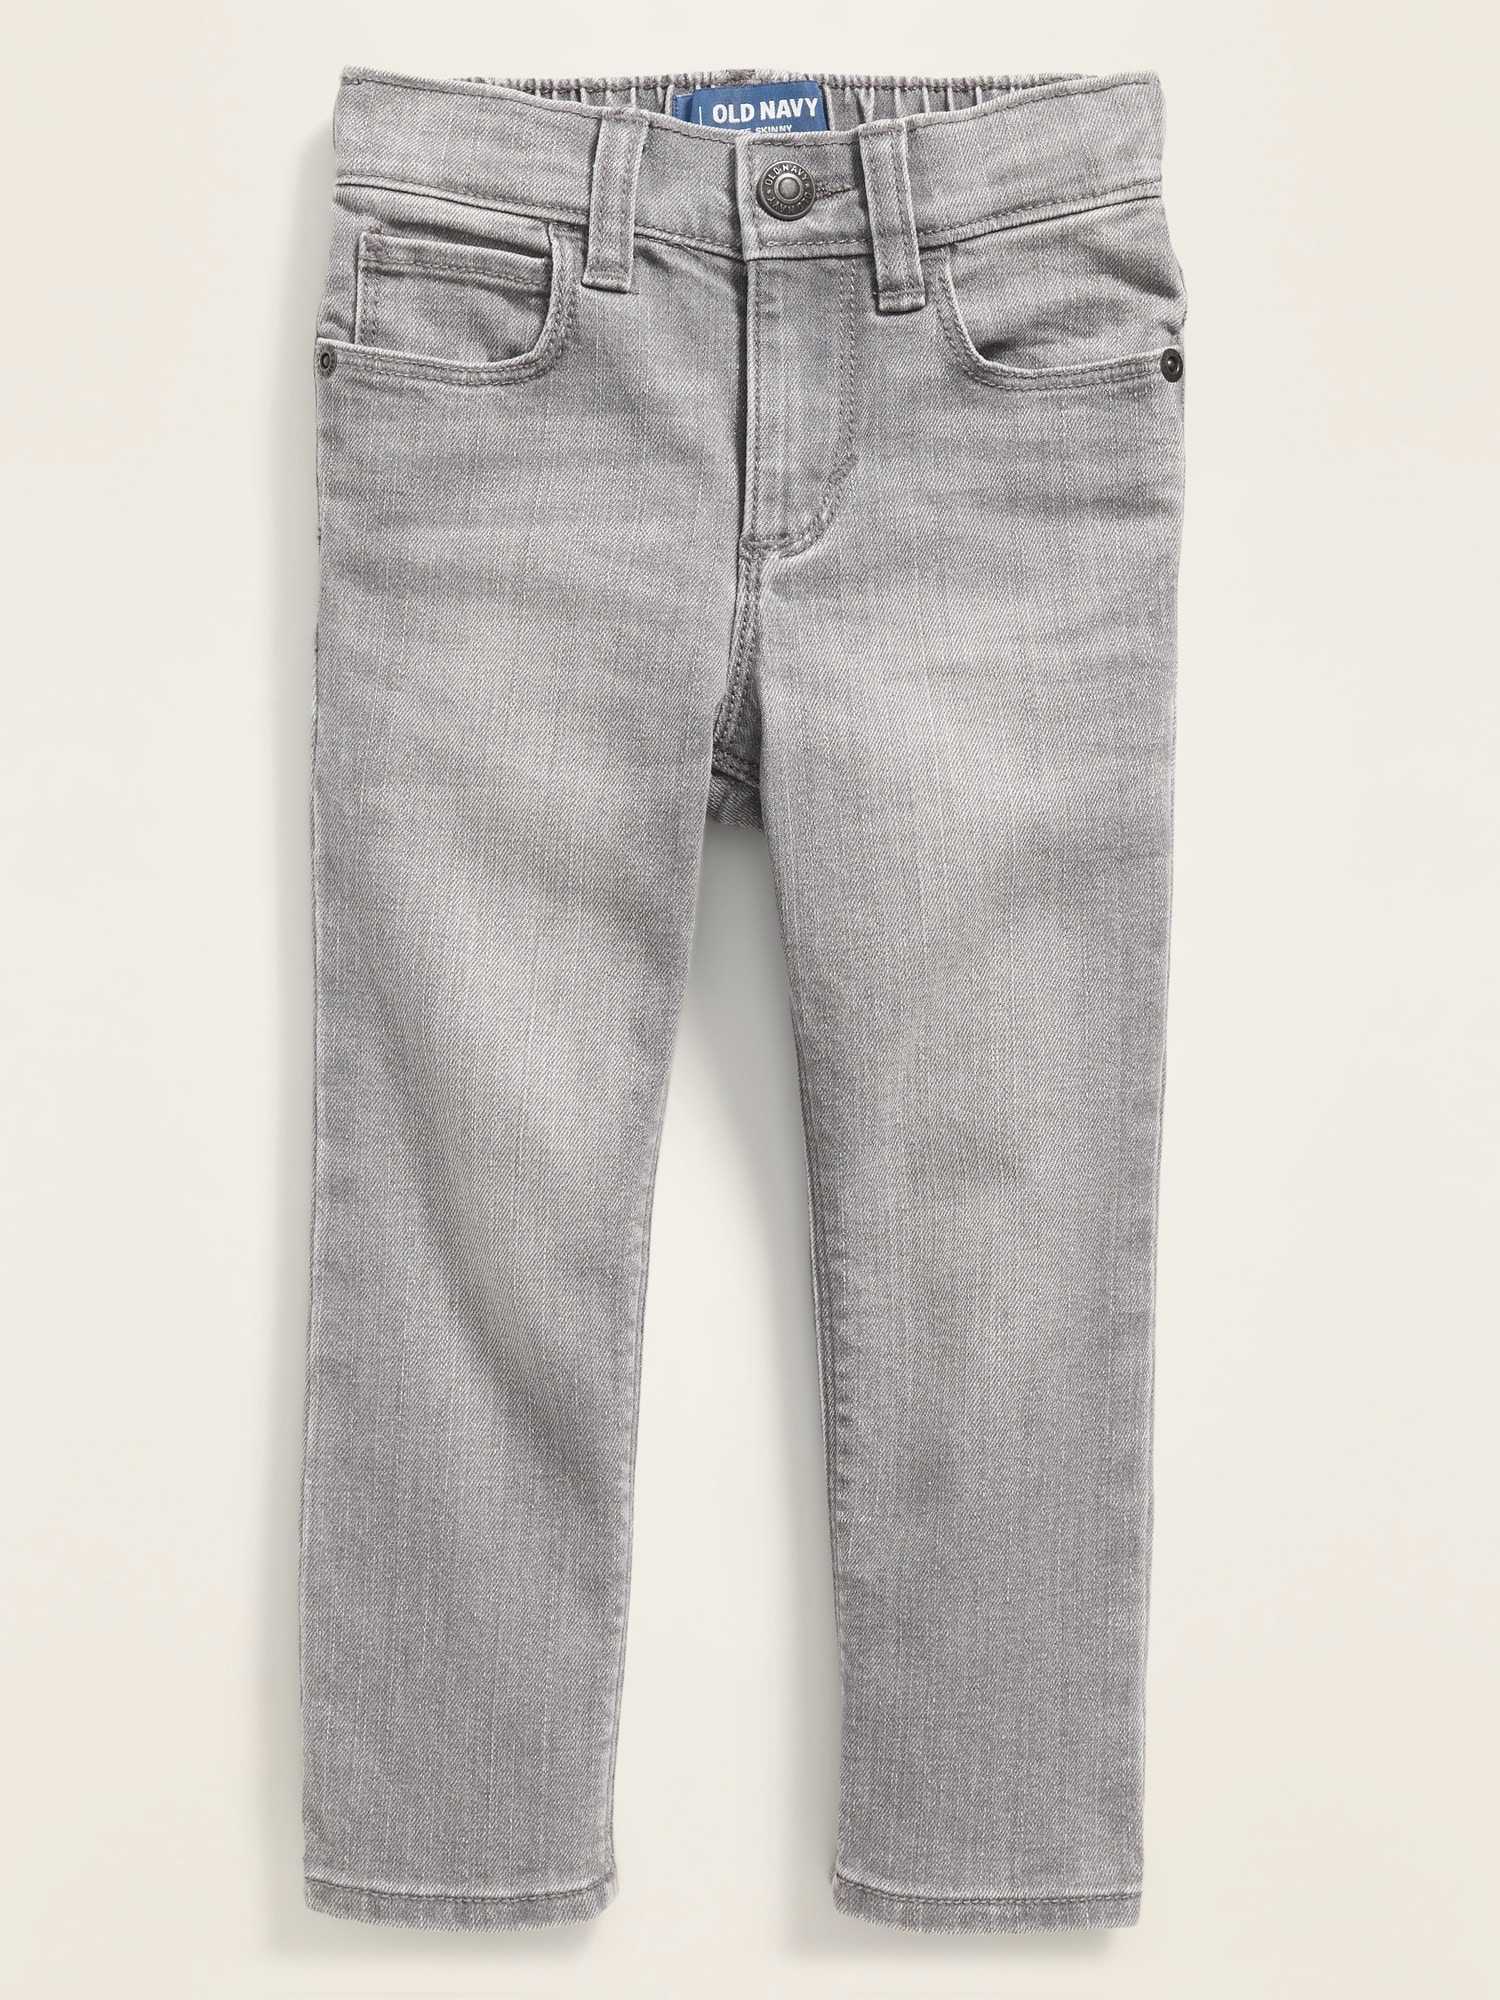 Buy > skinny grey jeans > in stock